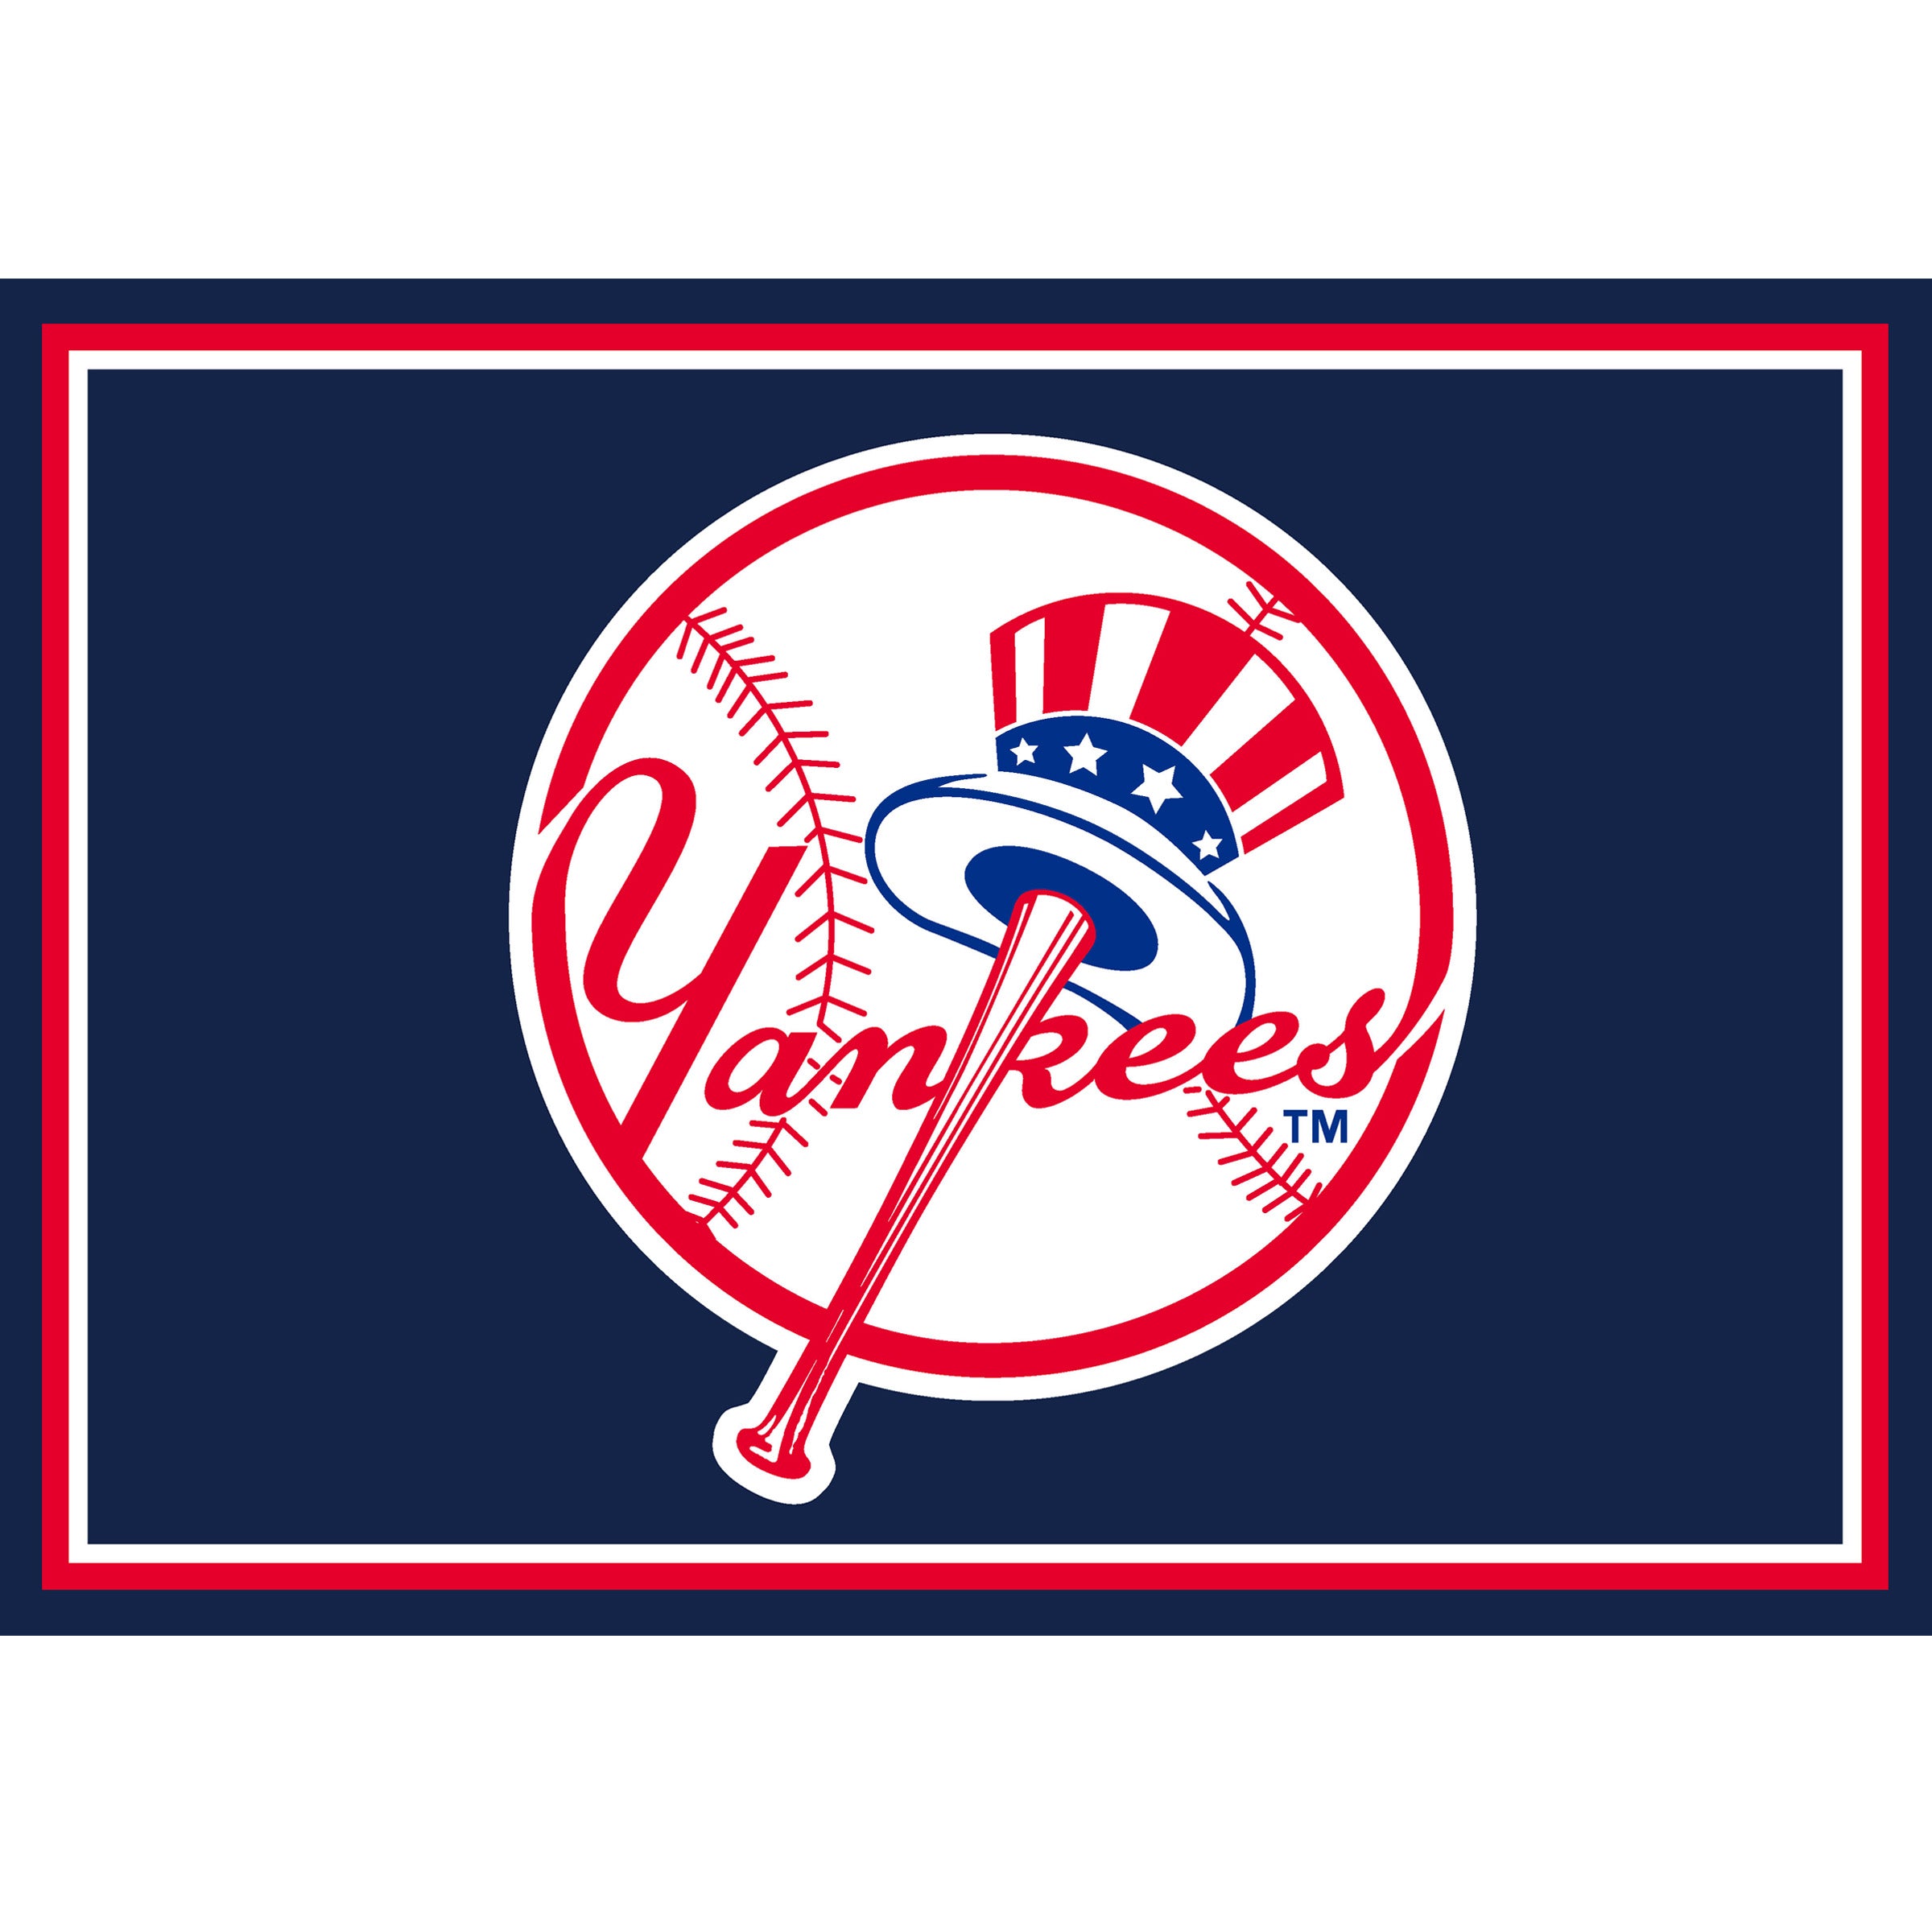 New York Yankees Team